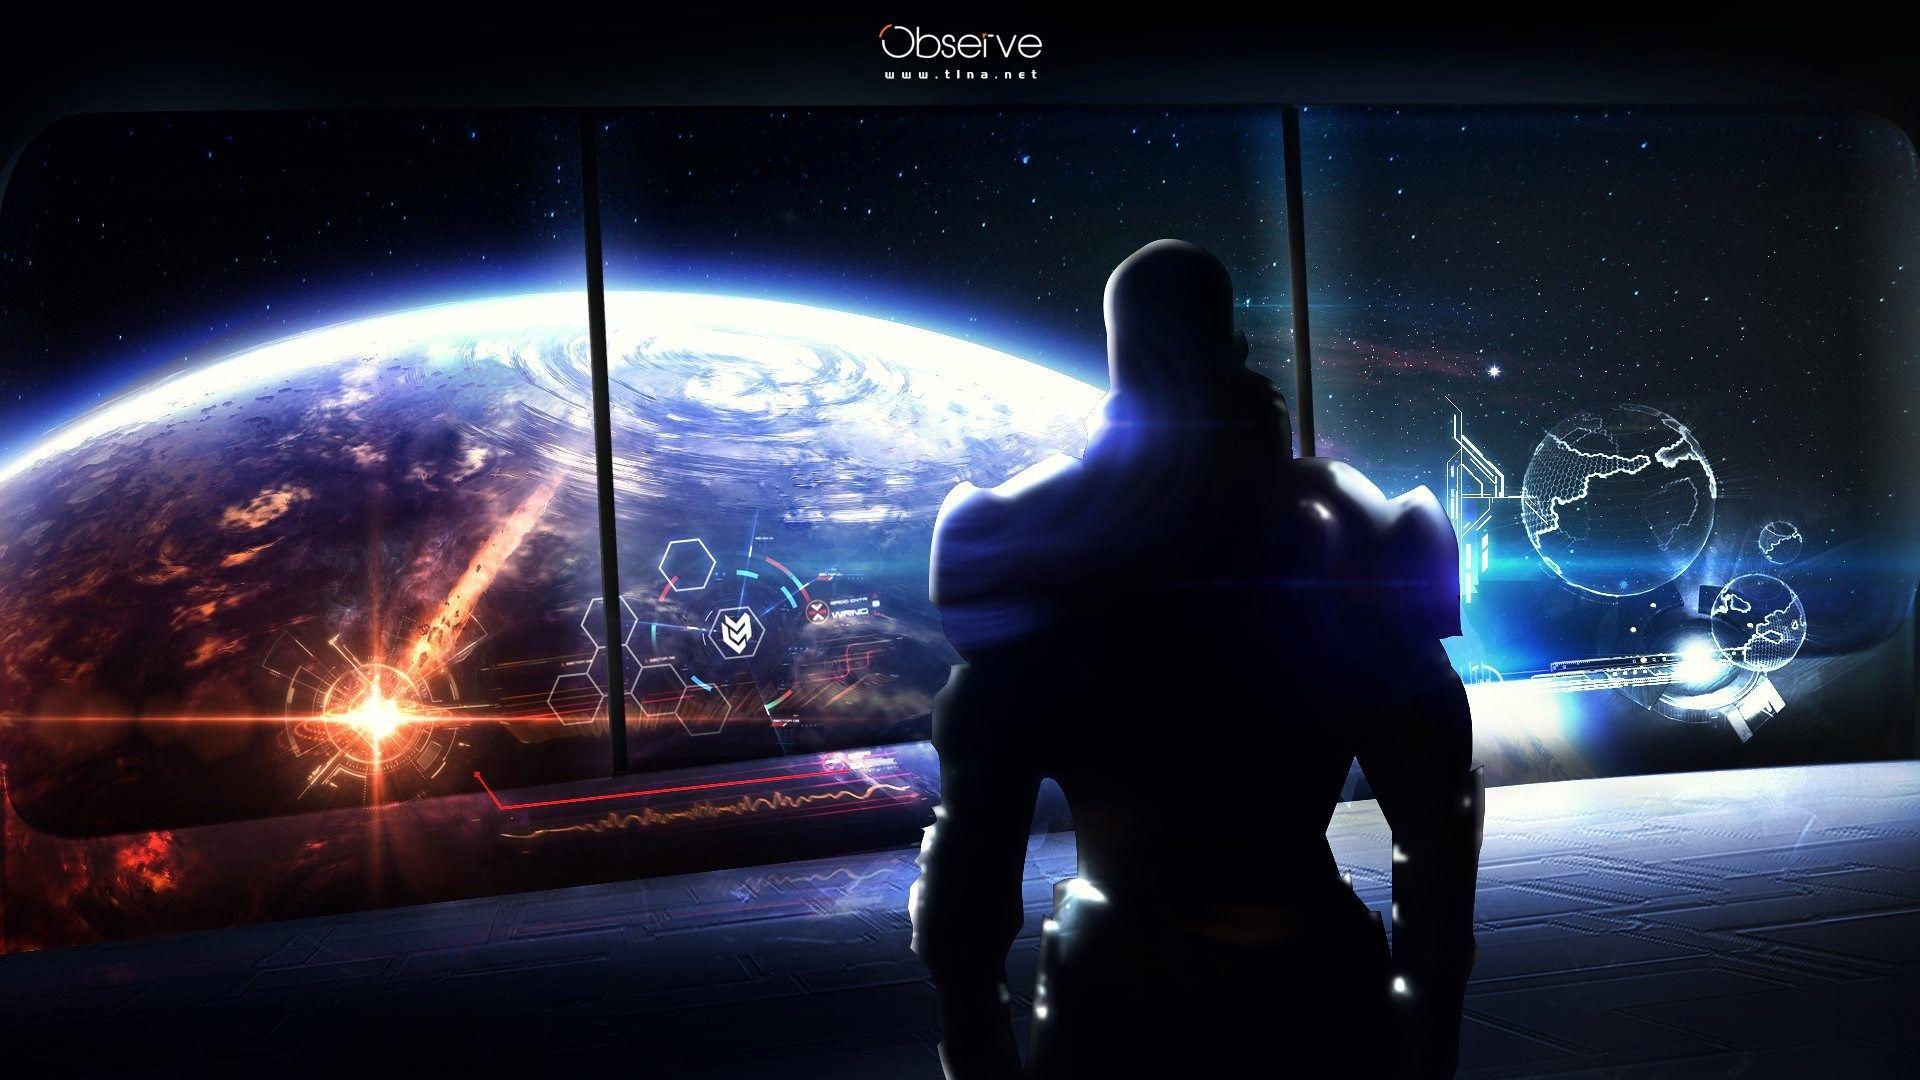 4k Mass Effect Wallpapers Top Free 4k Mass Effect Backgrounds Wallpaperaccess 